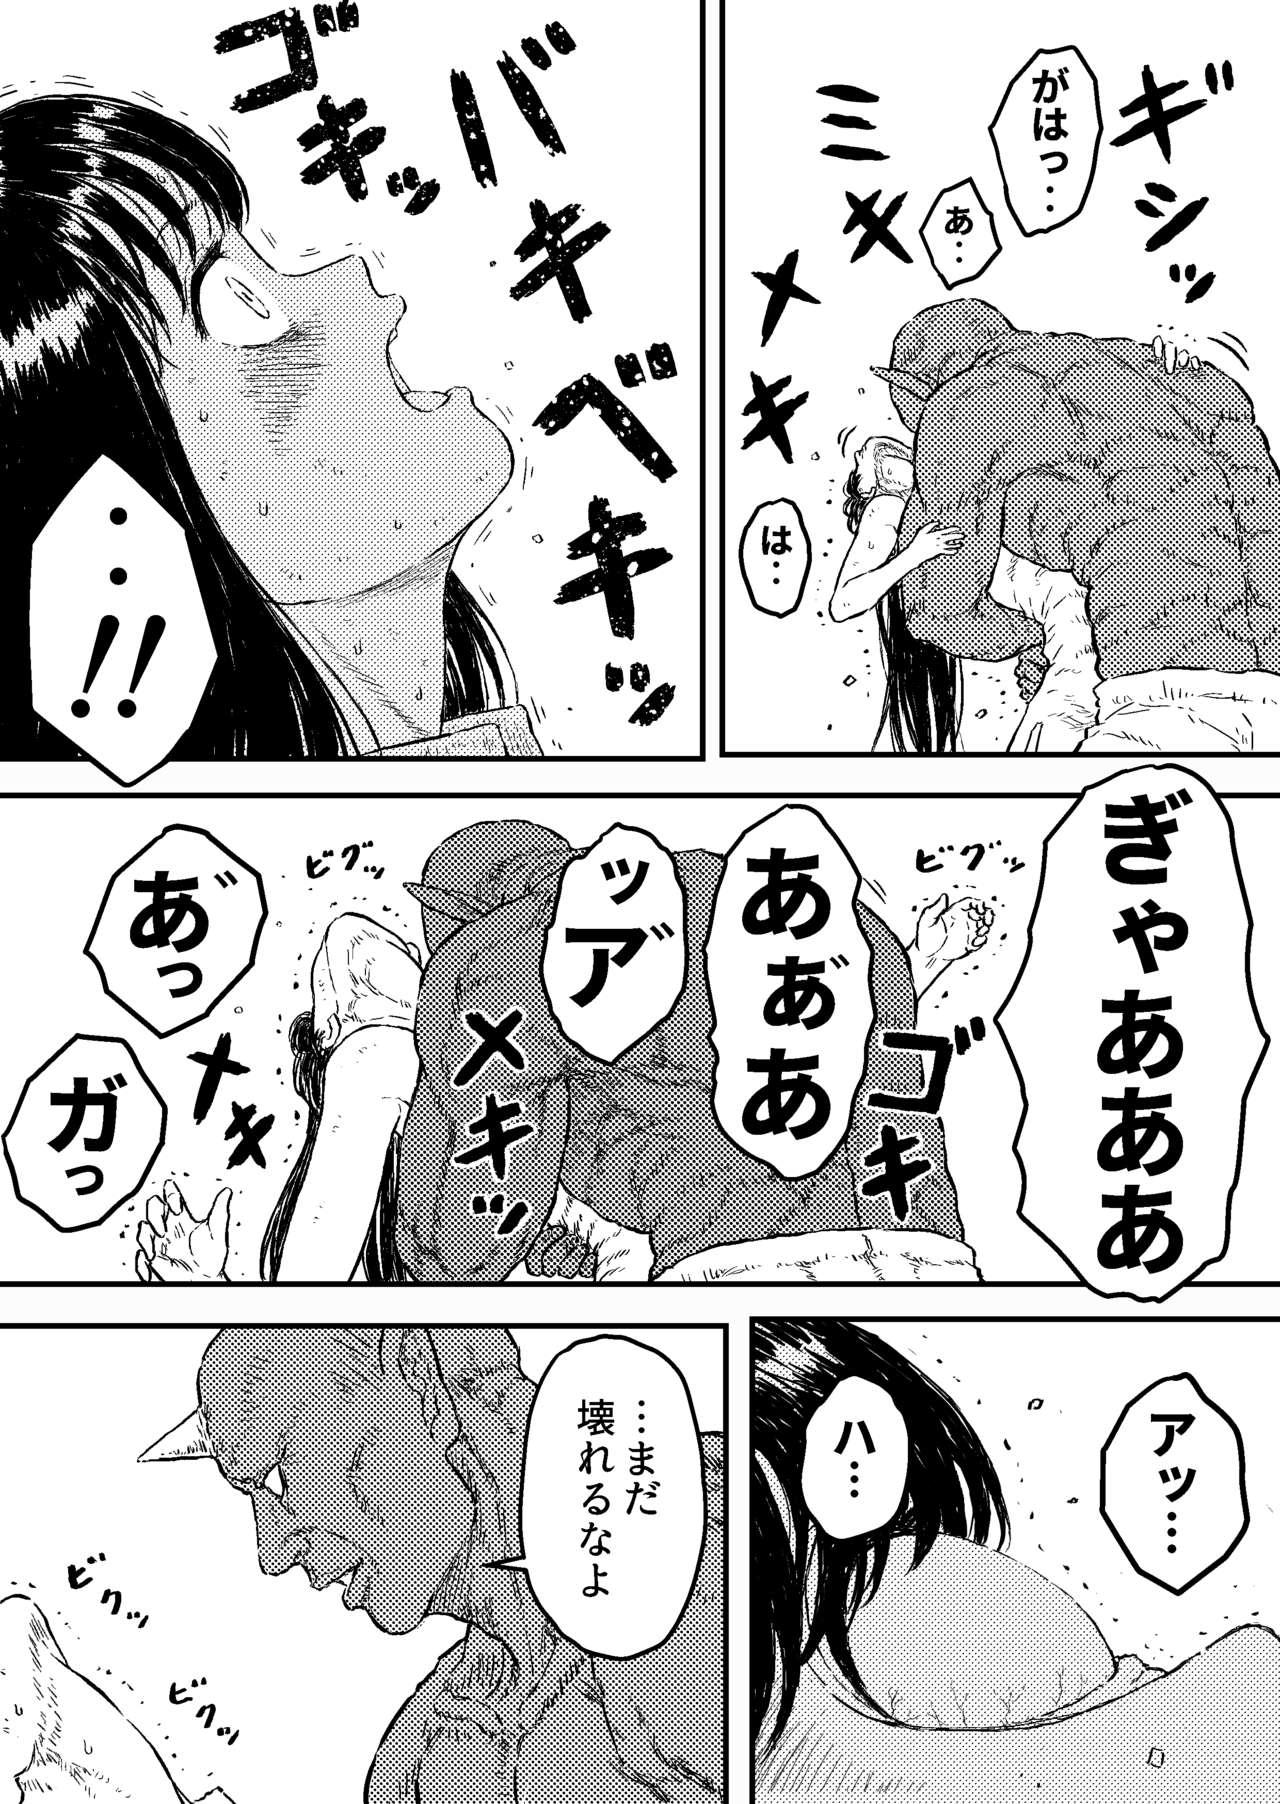 Spycam Sutoranguru Gold 4 『Seigi no hiroin kosatsu subete o kake te tataka ta shojo no unmei』 - Original Fist - Page 7